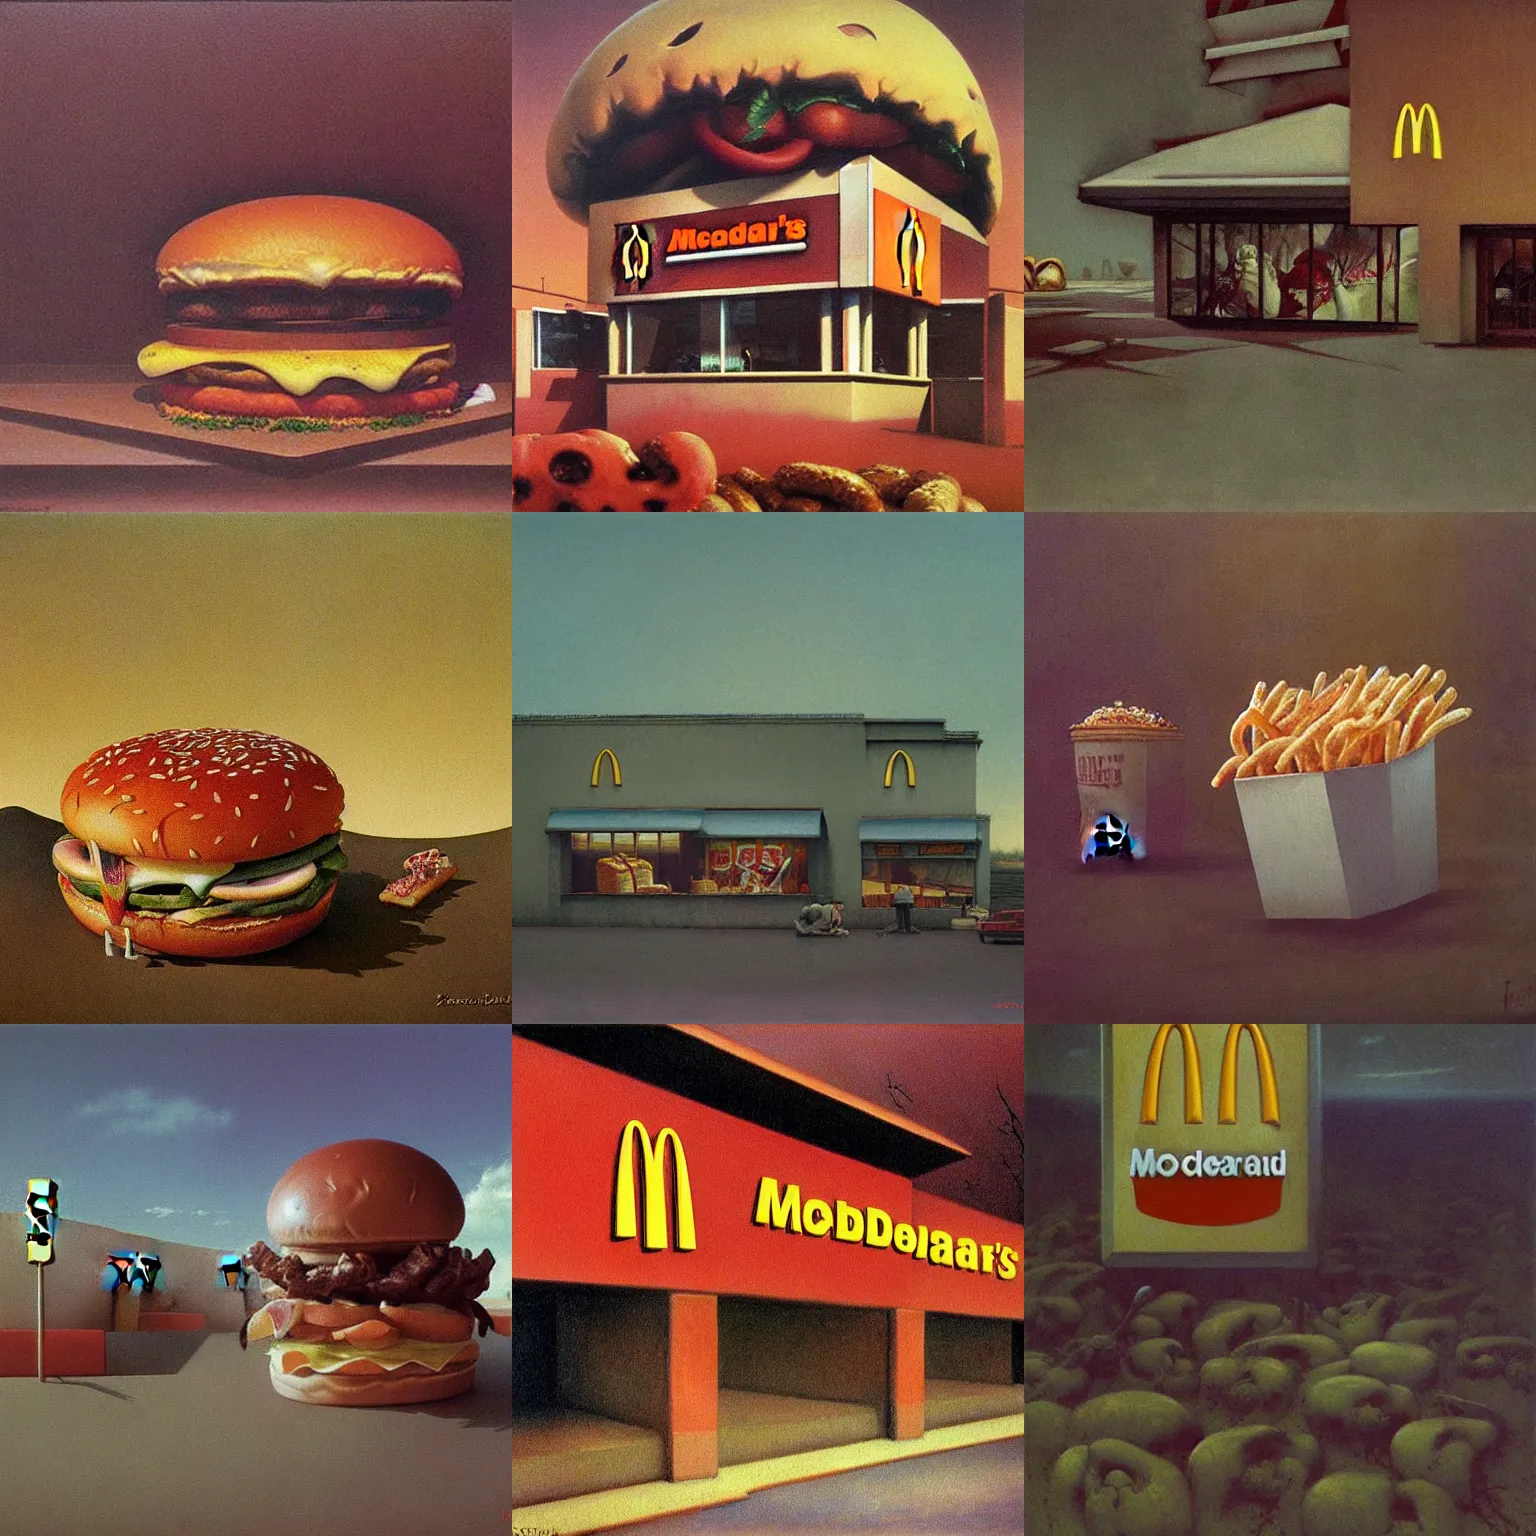 Prompt: McDonalds, painting by Zdzisław Beksiński